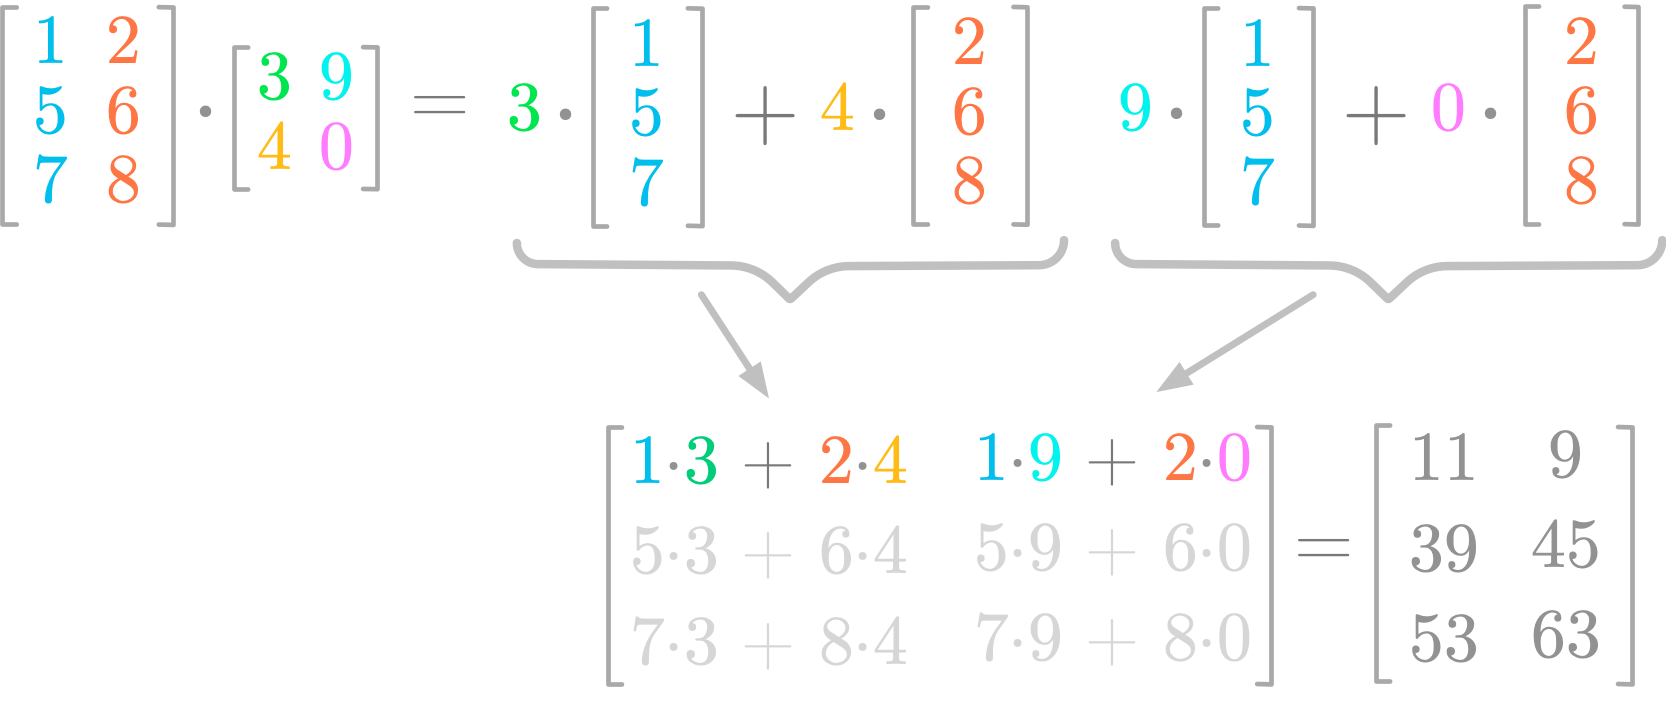 Figure 5: Matrix product.